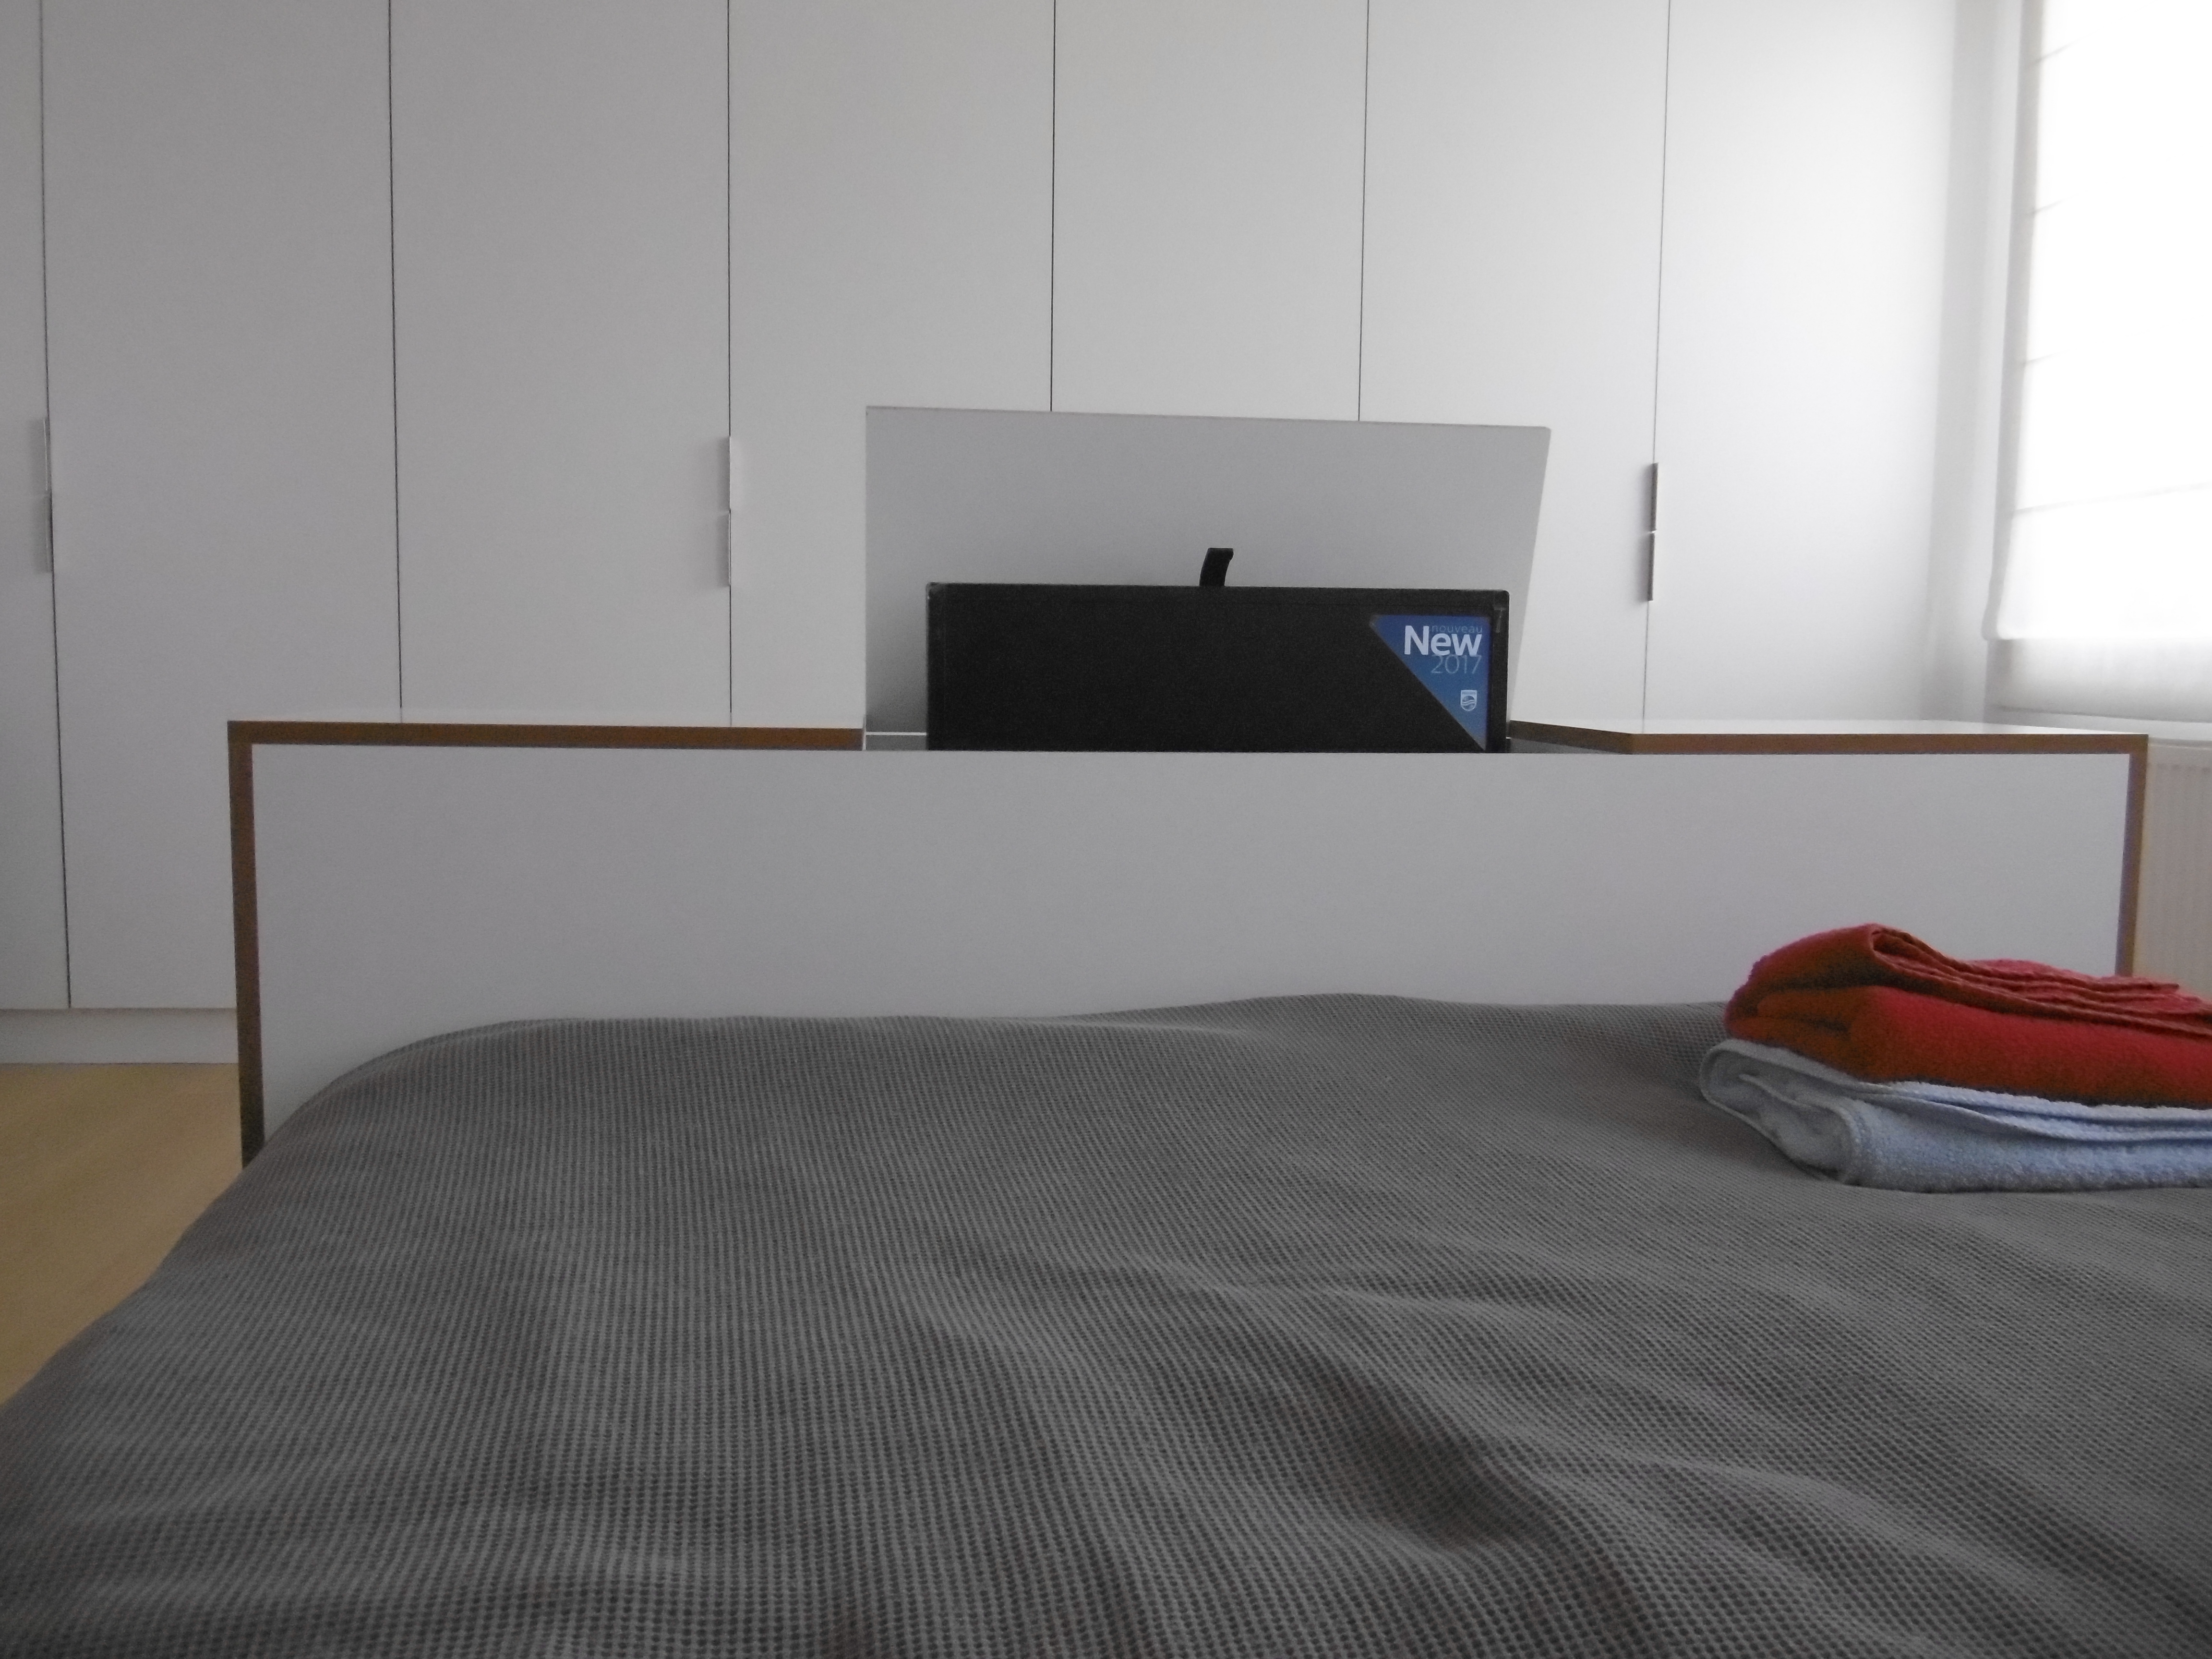 Bout de lit avec tv escamotable, meuble TV en bout de lit, meuble avec TV  escamotable pour pied de lit